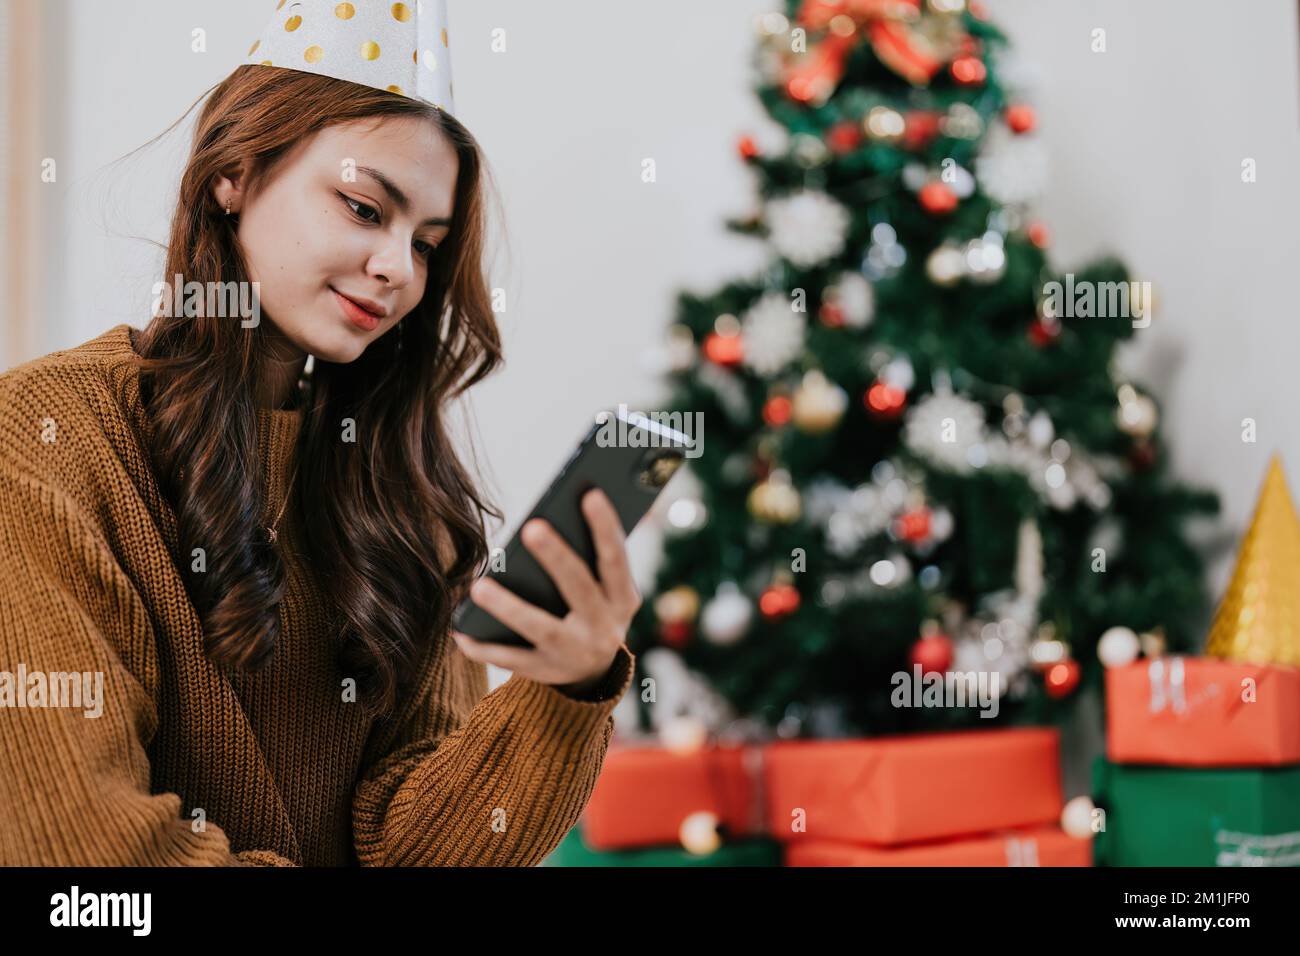 Fröhliche Frau, die die Weihnachtsbotschaft liest, Glückwunsch Nachricht Benutzen Sie Ihr Smartphone an einem festlich dekorierten Weihnachtsbaum. Lächelnde, wunderschöne Frau, die sich auf dem Handy unterhält Stockfoto